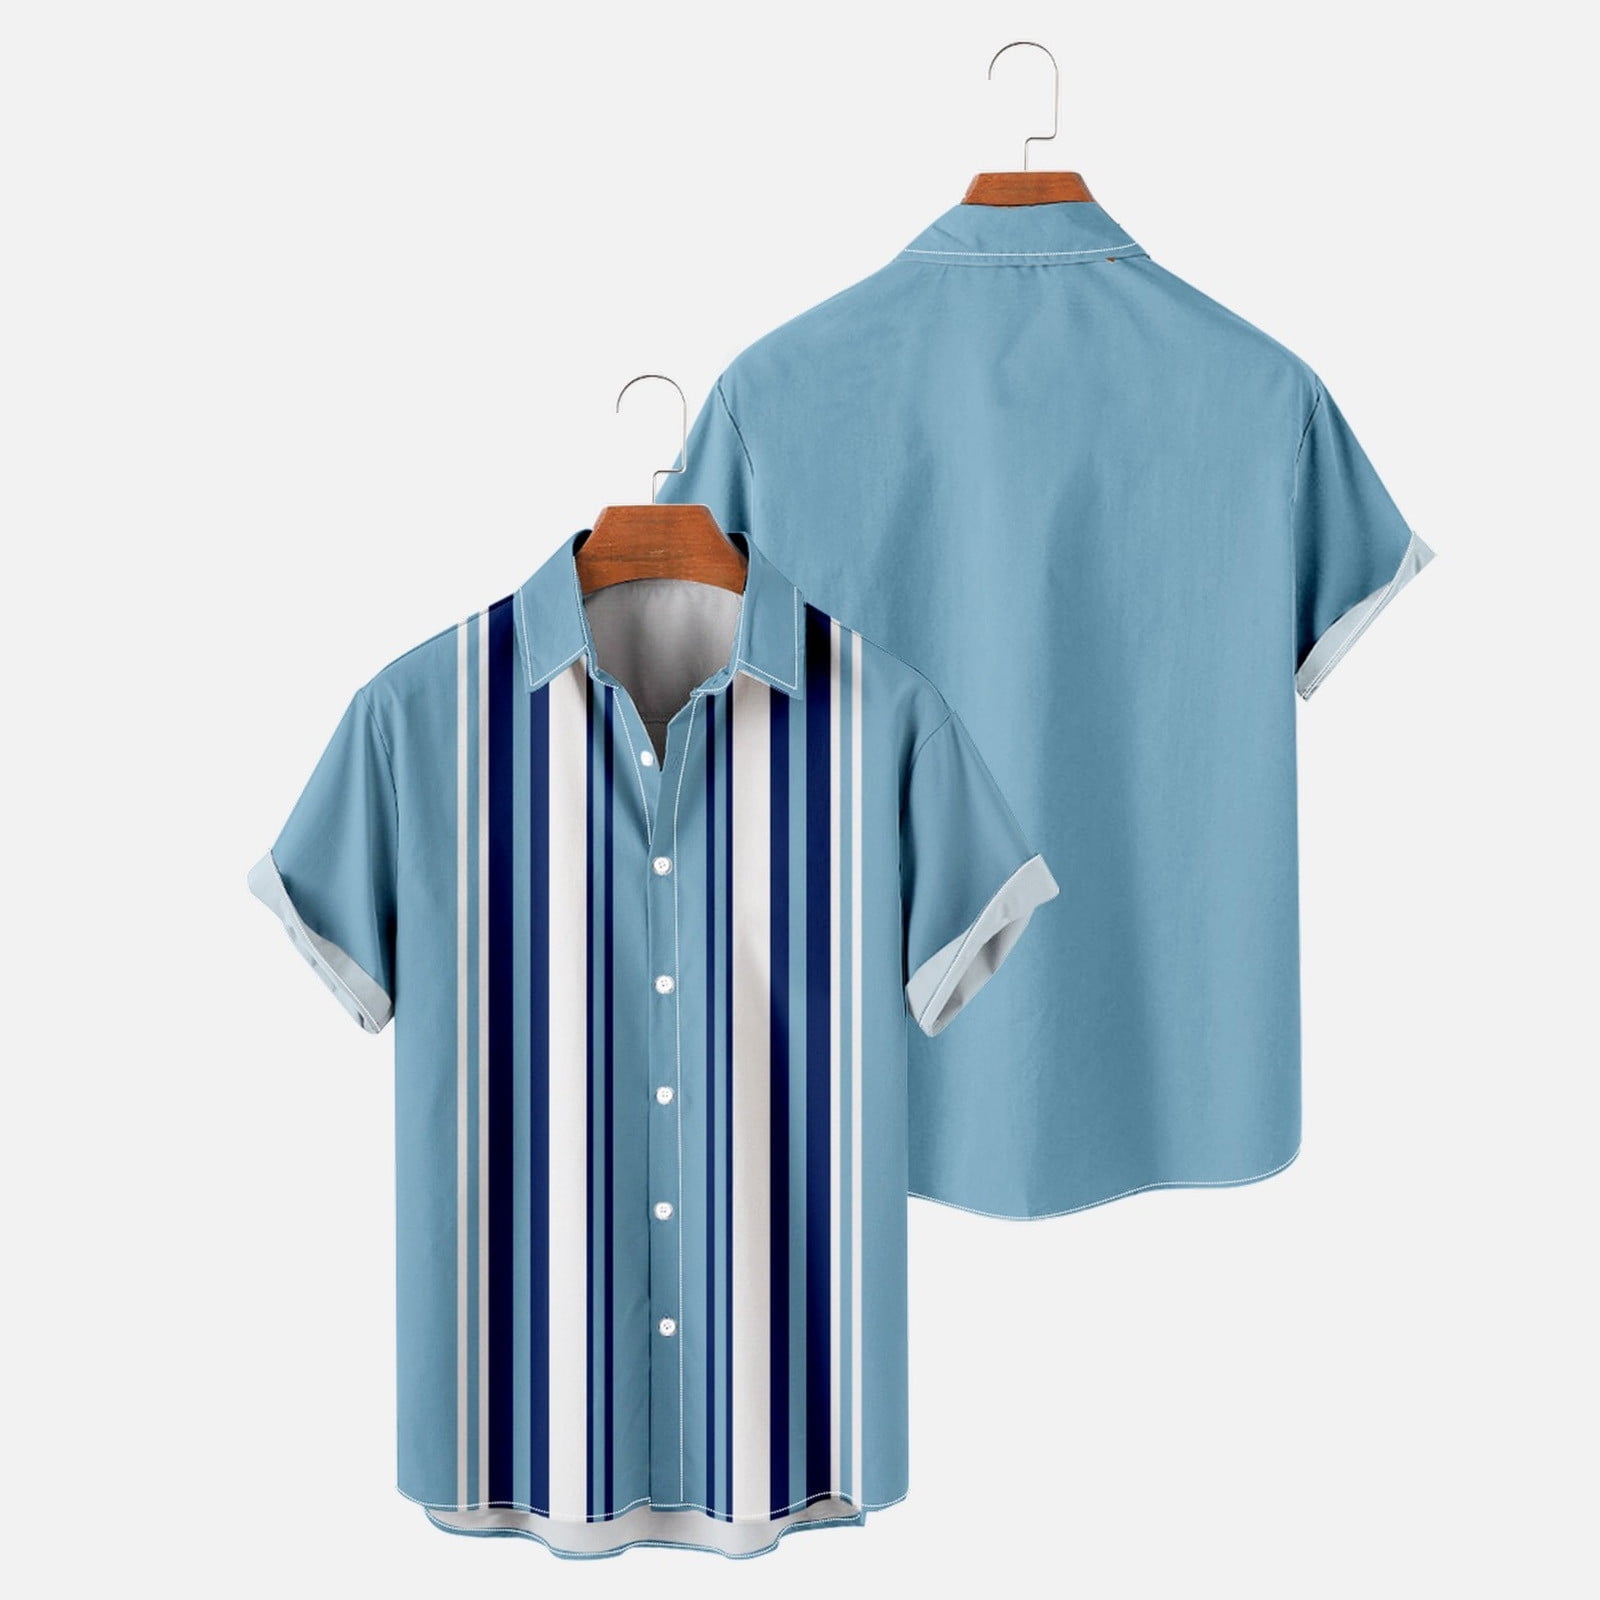 POROPL Shirts For Men Button-down Short Sleeve Summer Fashion Hawaiian ...